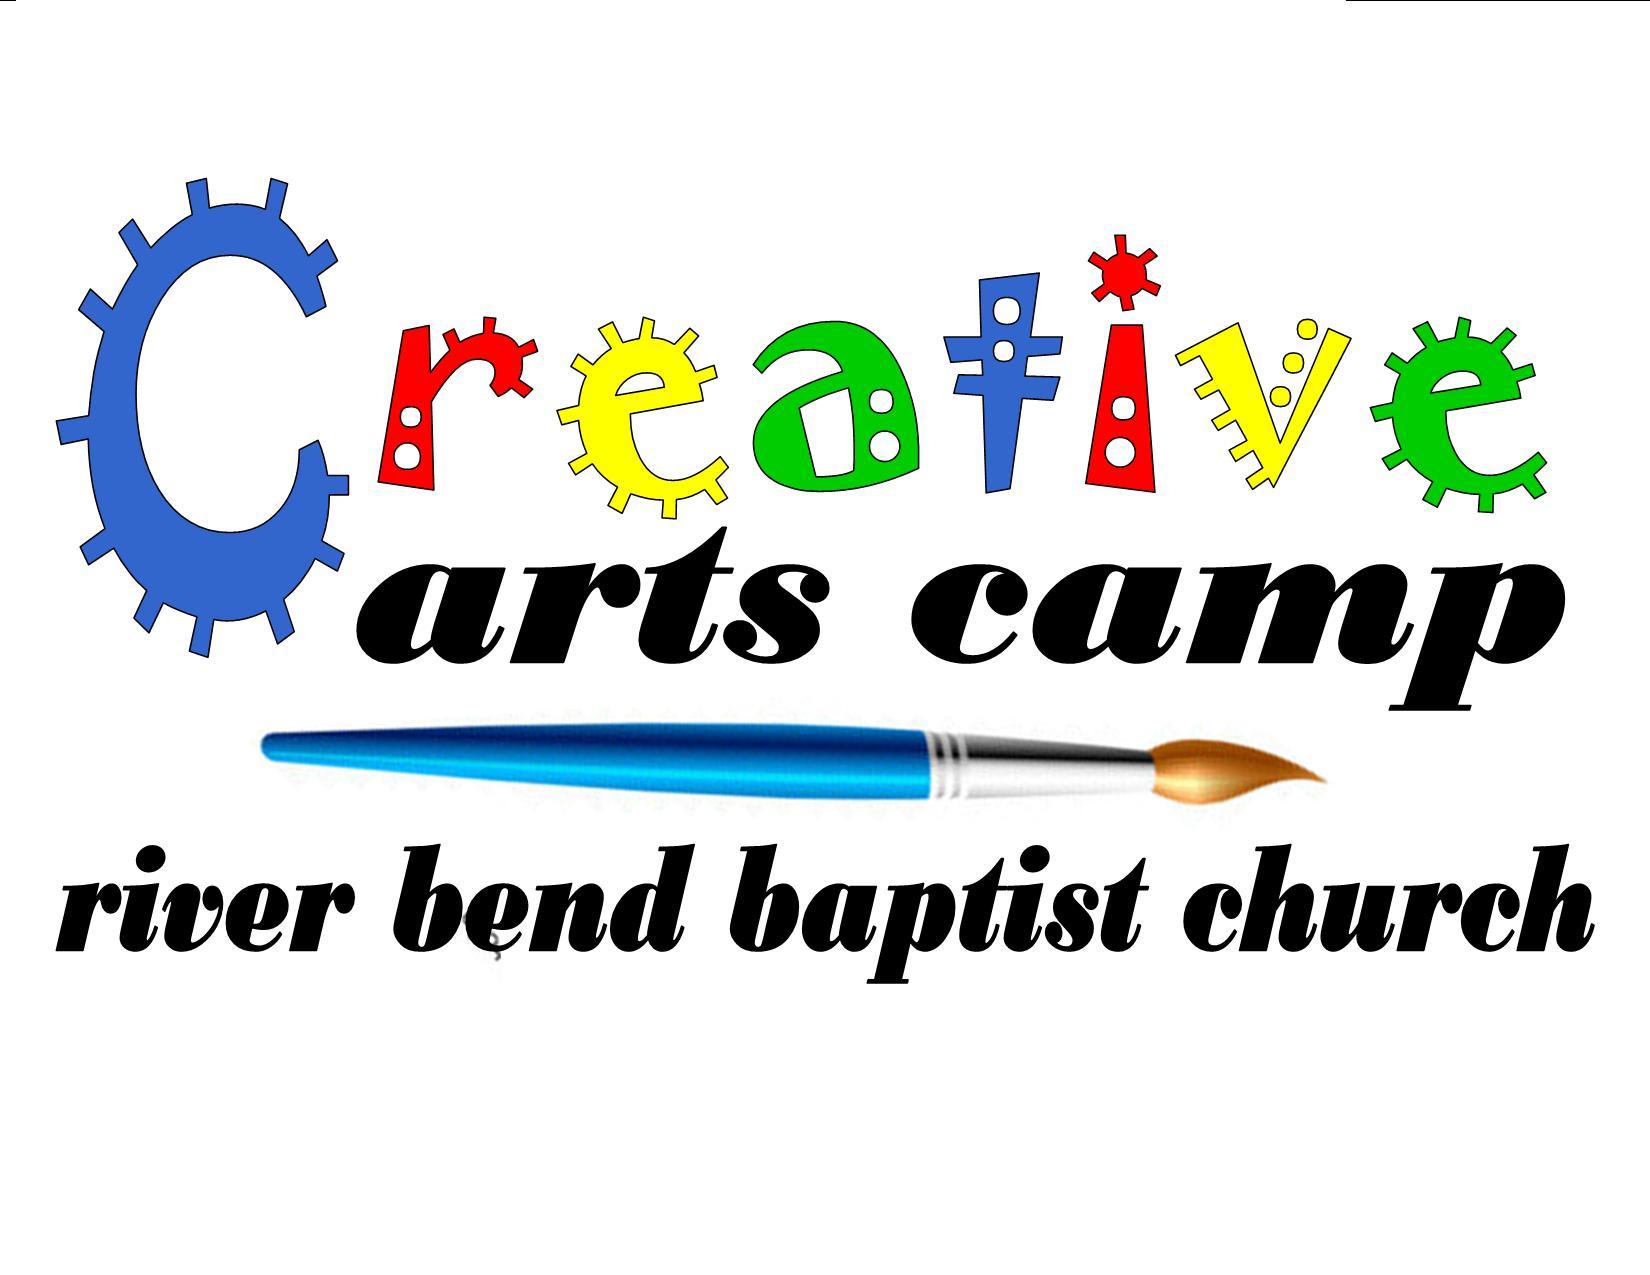 Church Camp Logo - Creative Arts Camp logo